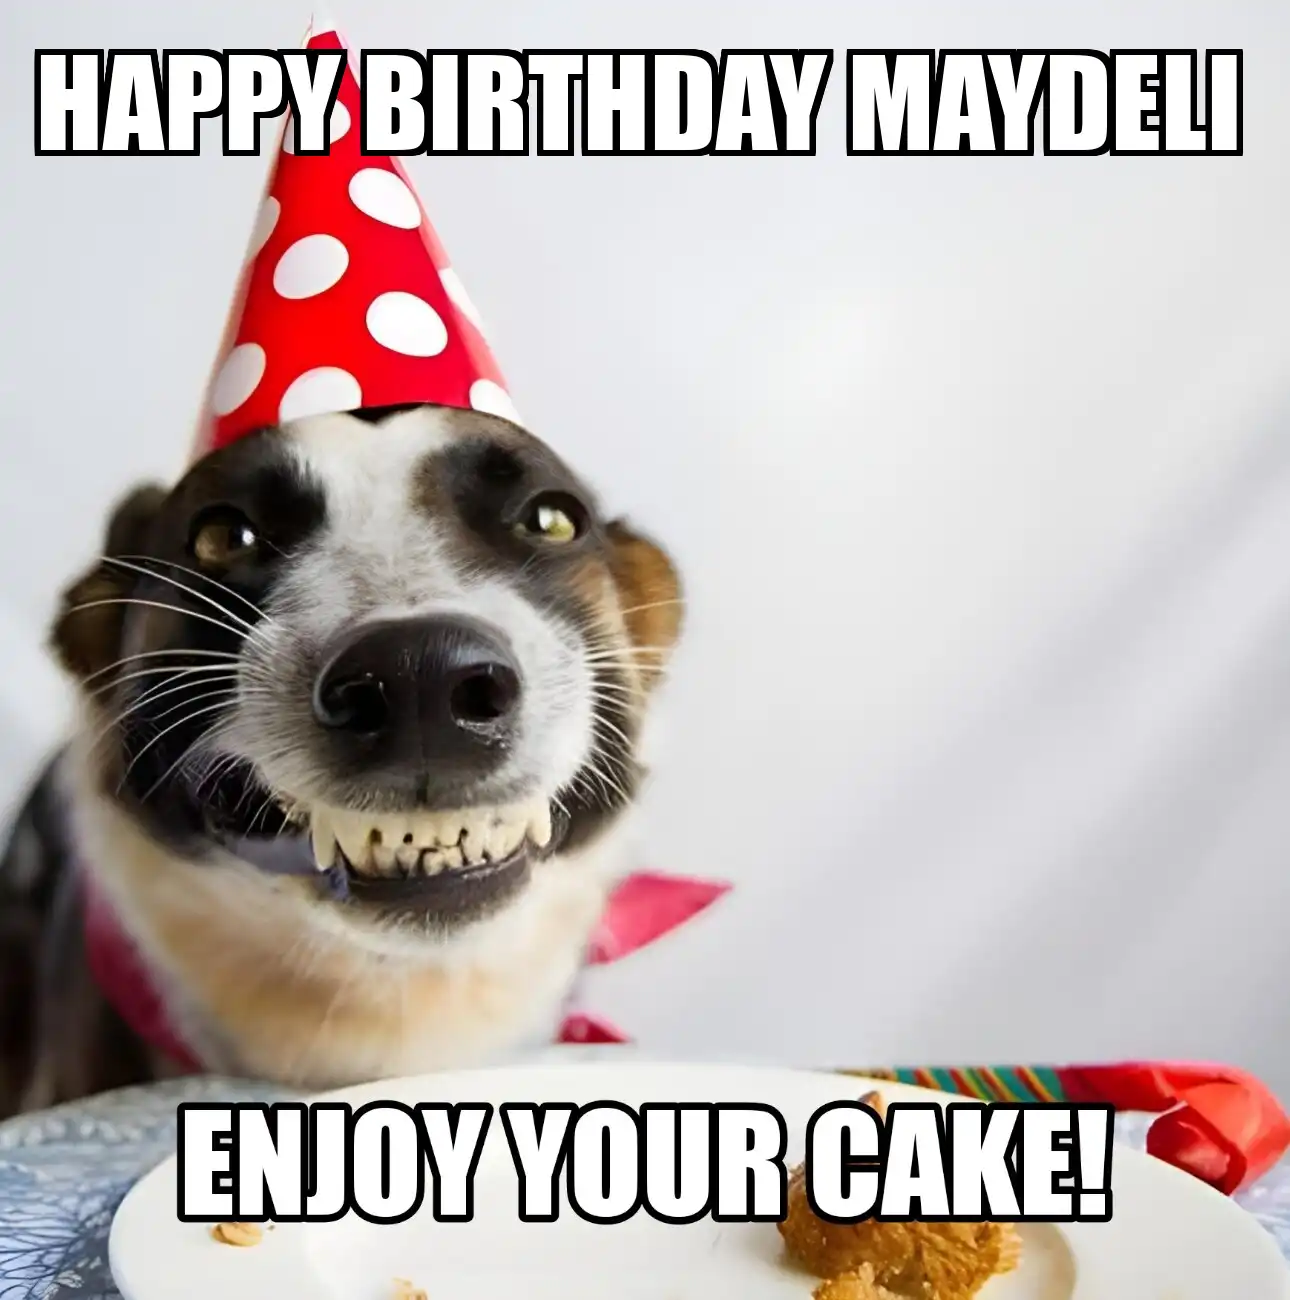 Happy Birthday Maydeli Enjoy Your Cake Dog Meme